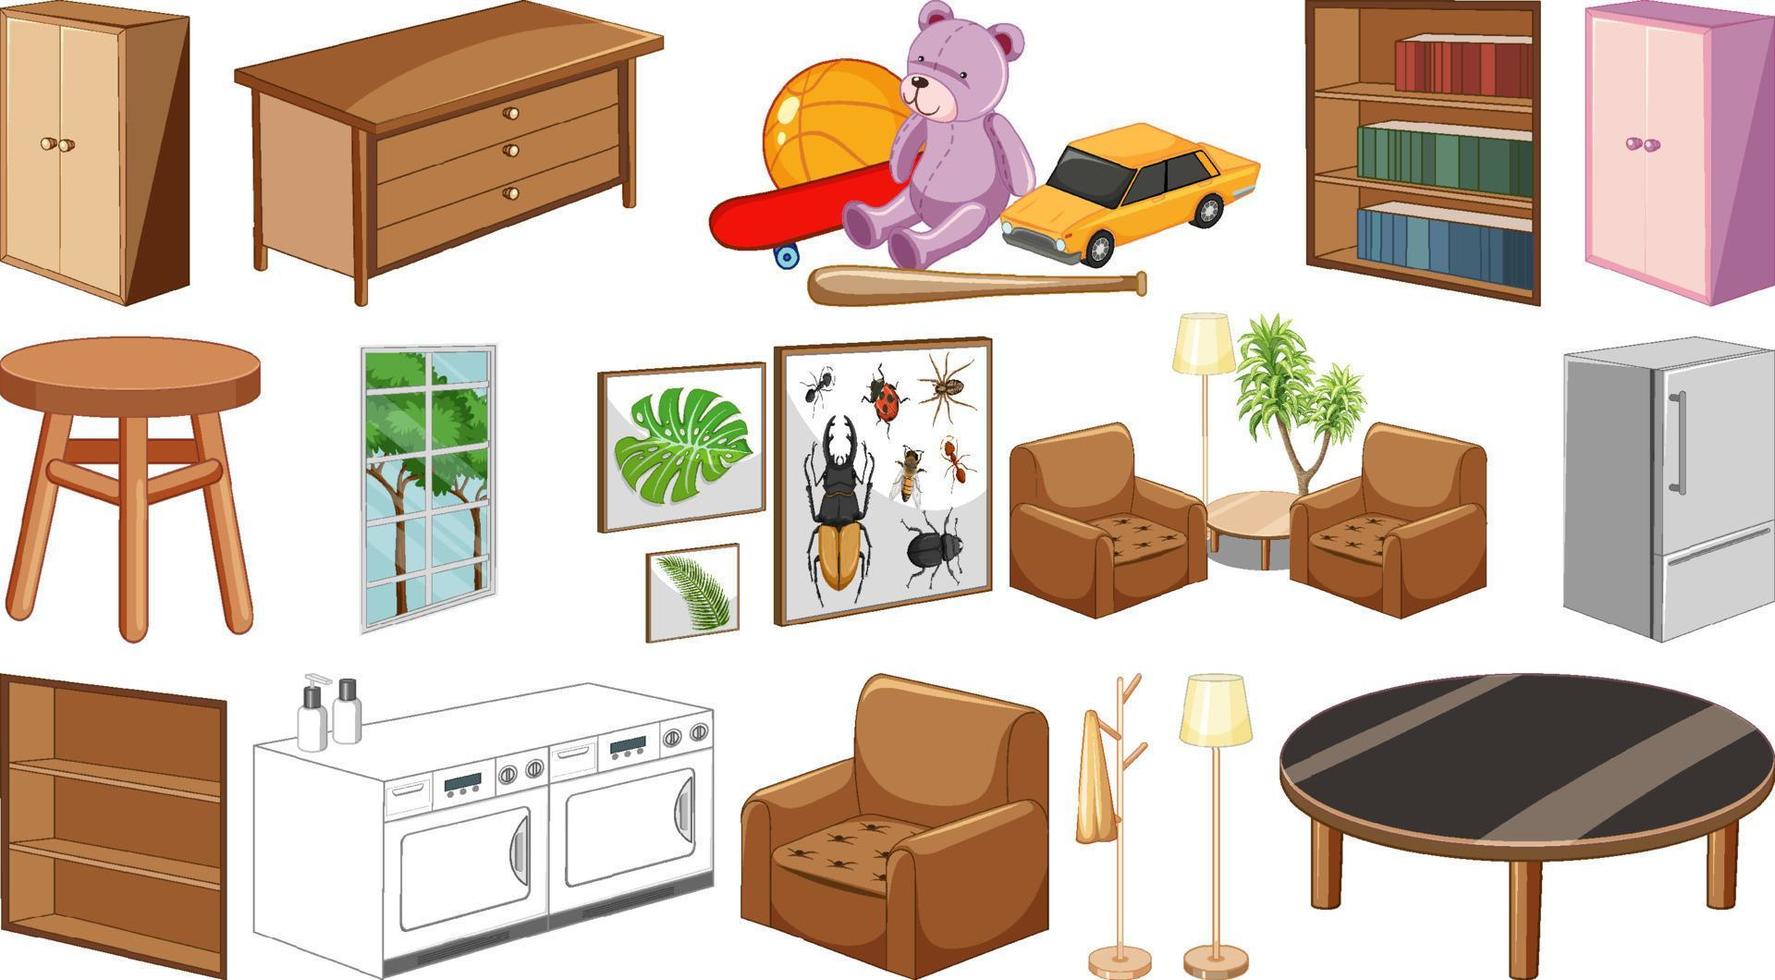 conjunto de muebles y decoraciones de interior vector